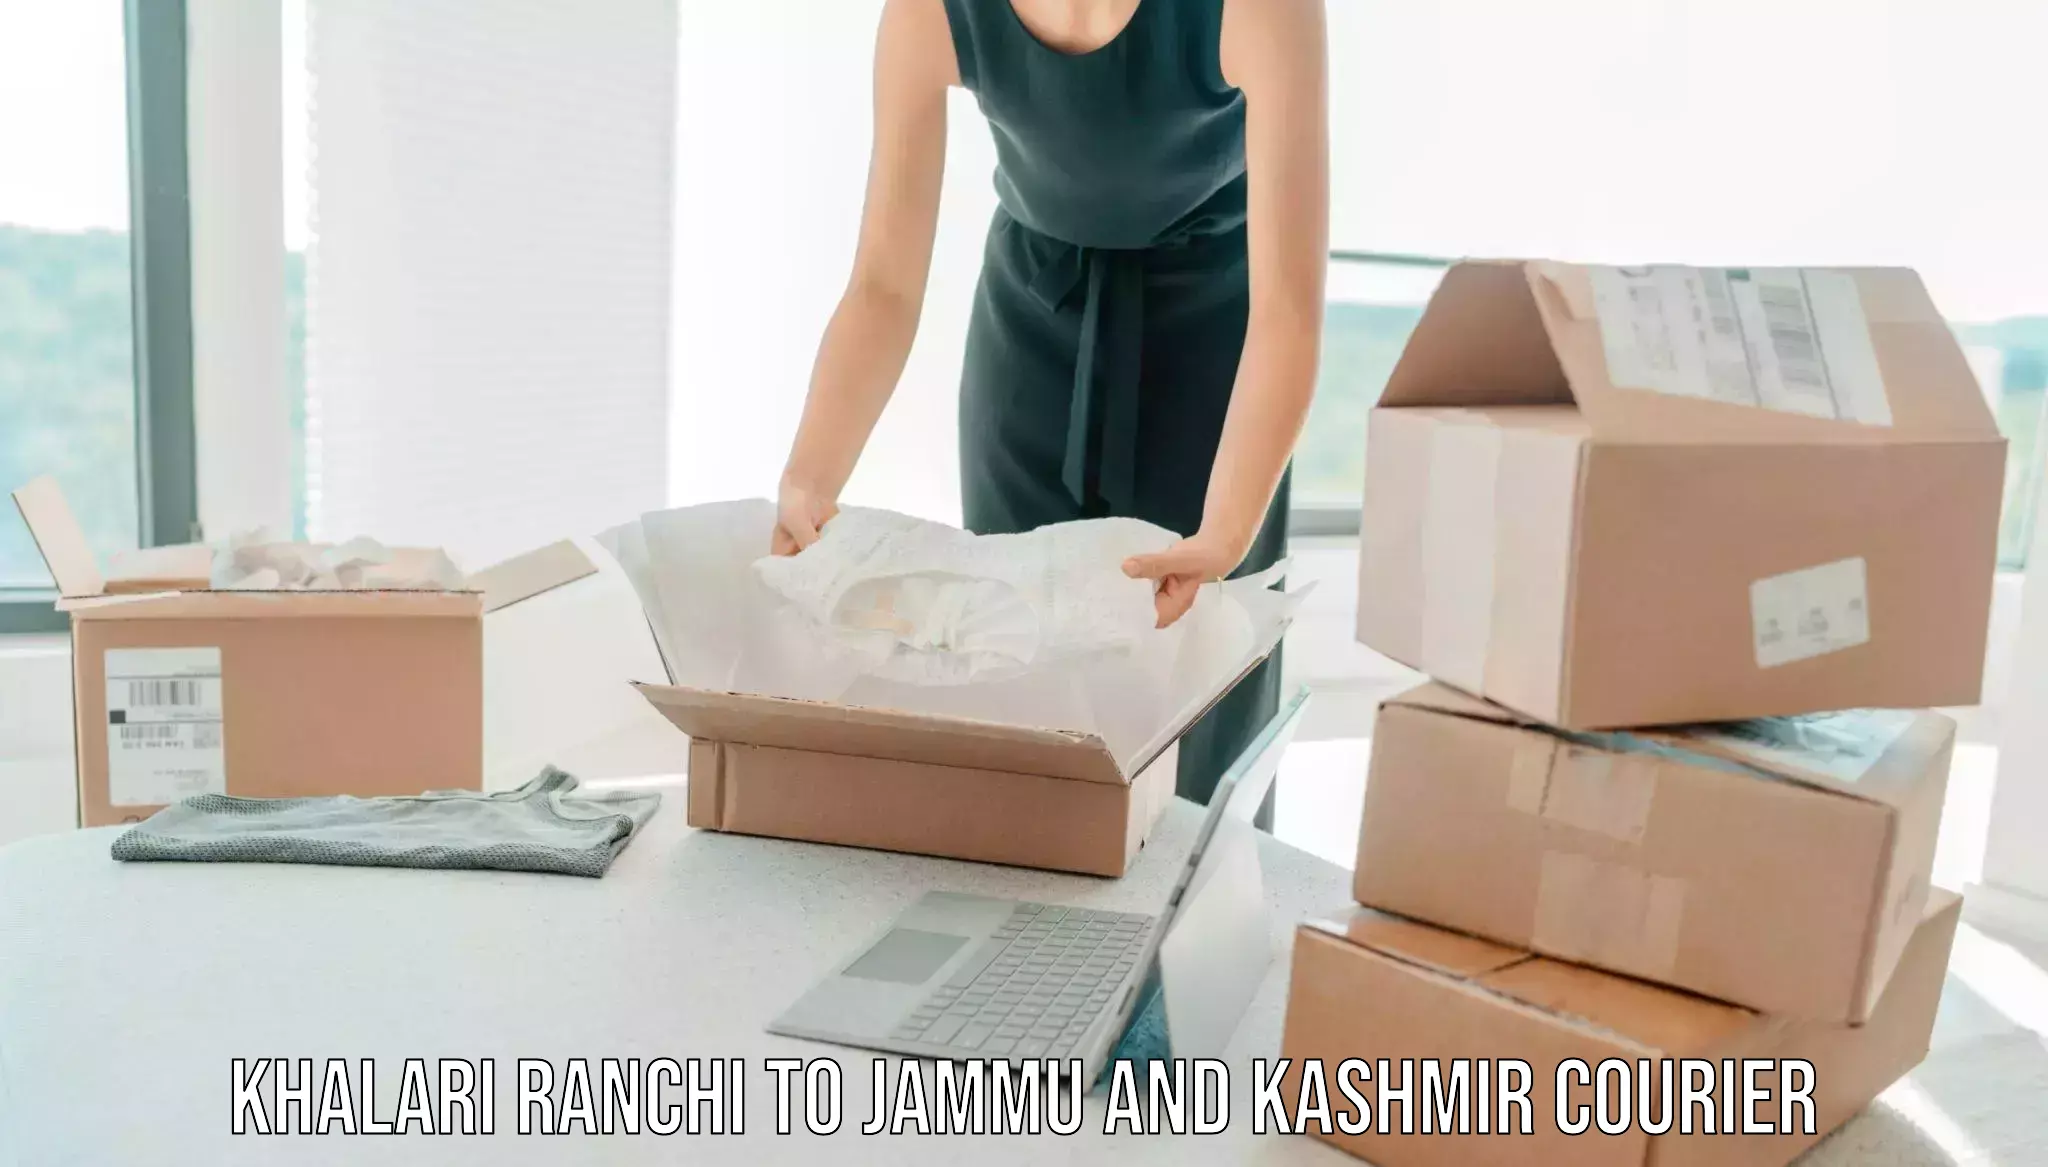 Moving and packing experts Khalari Ranchi to Baramulla